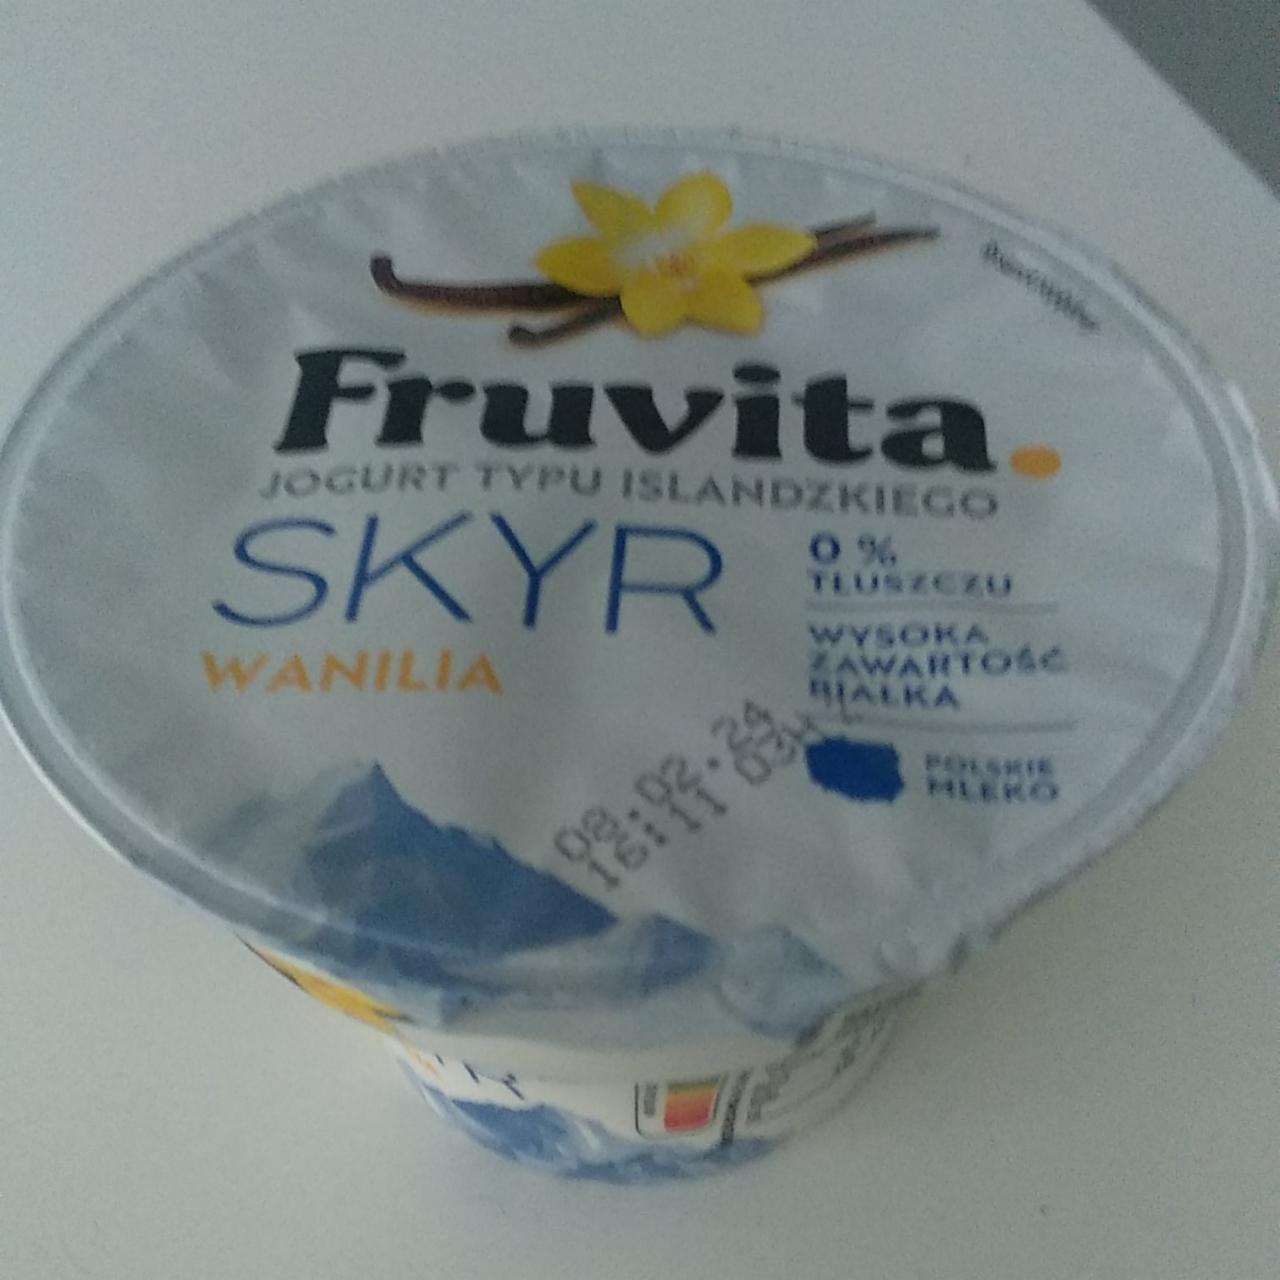 Fotografie - Jogurt typu islandzkiego Skyr wanilia 0% FruVita